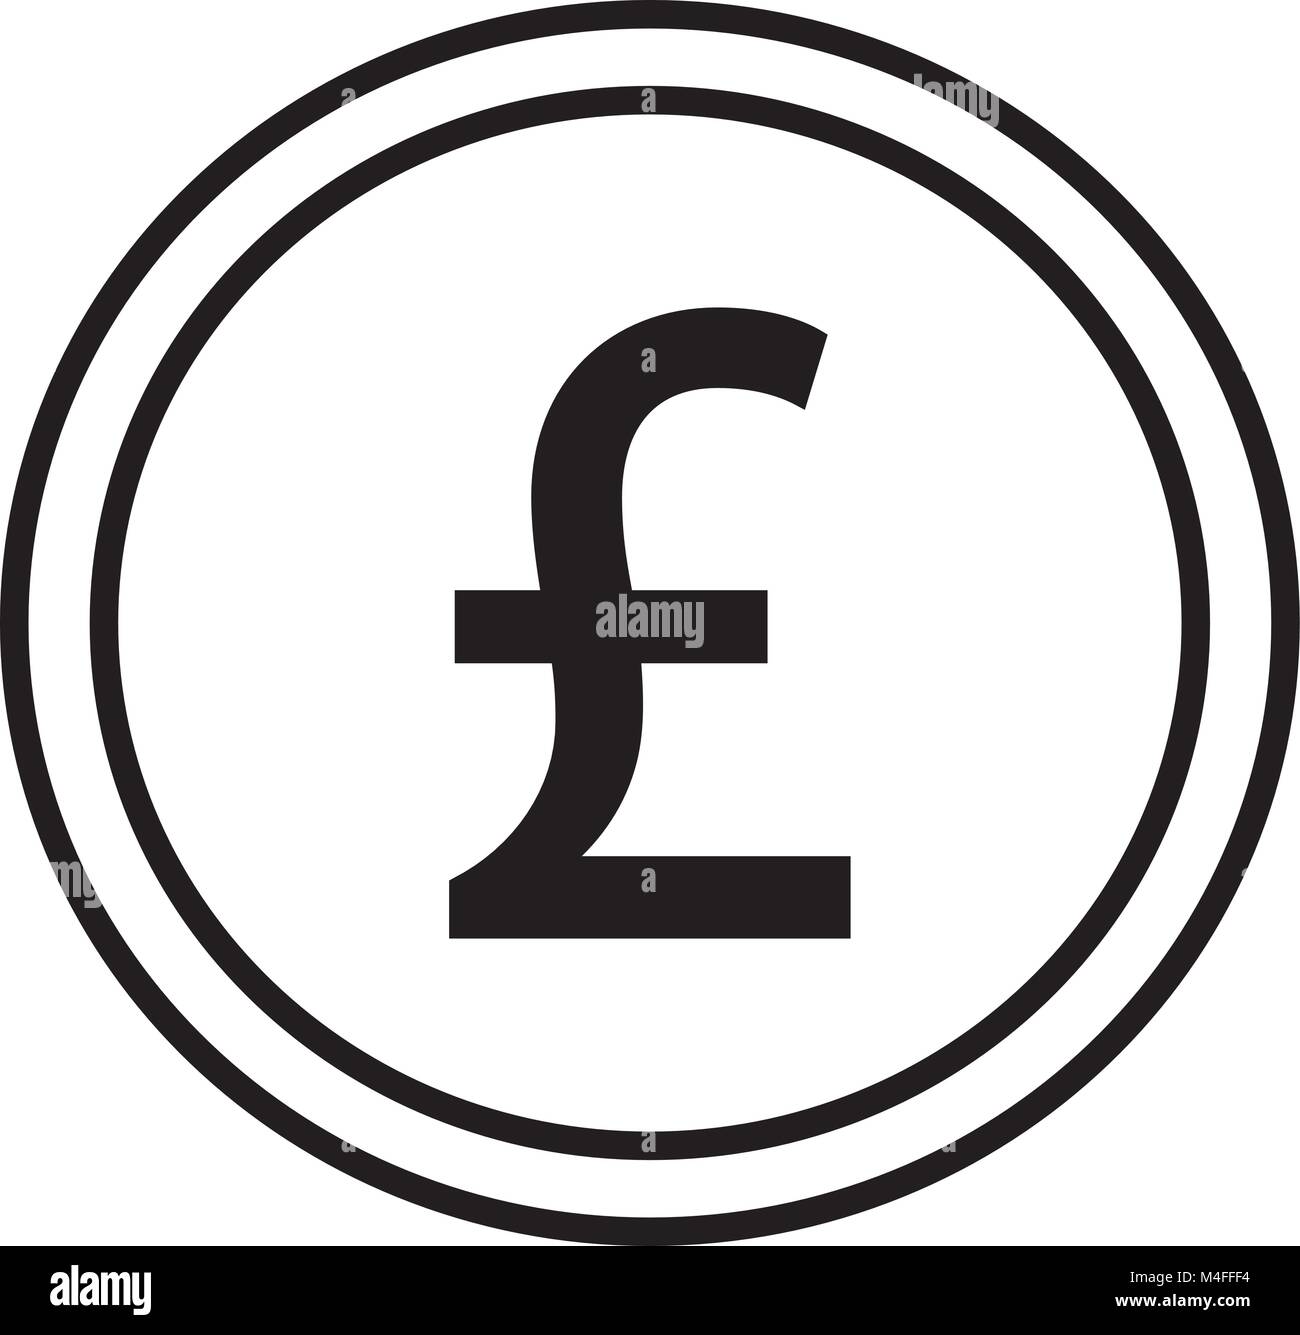 Symbole monétaire de la livre sterling Banque de photographies et d'images  à haute résolution - Alamy